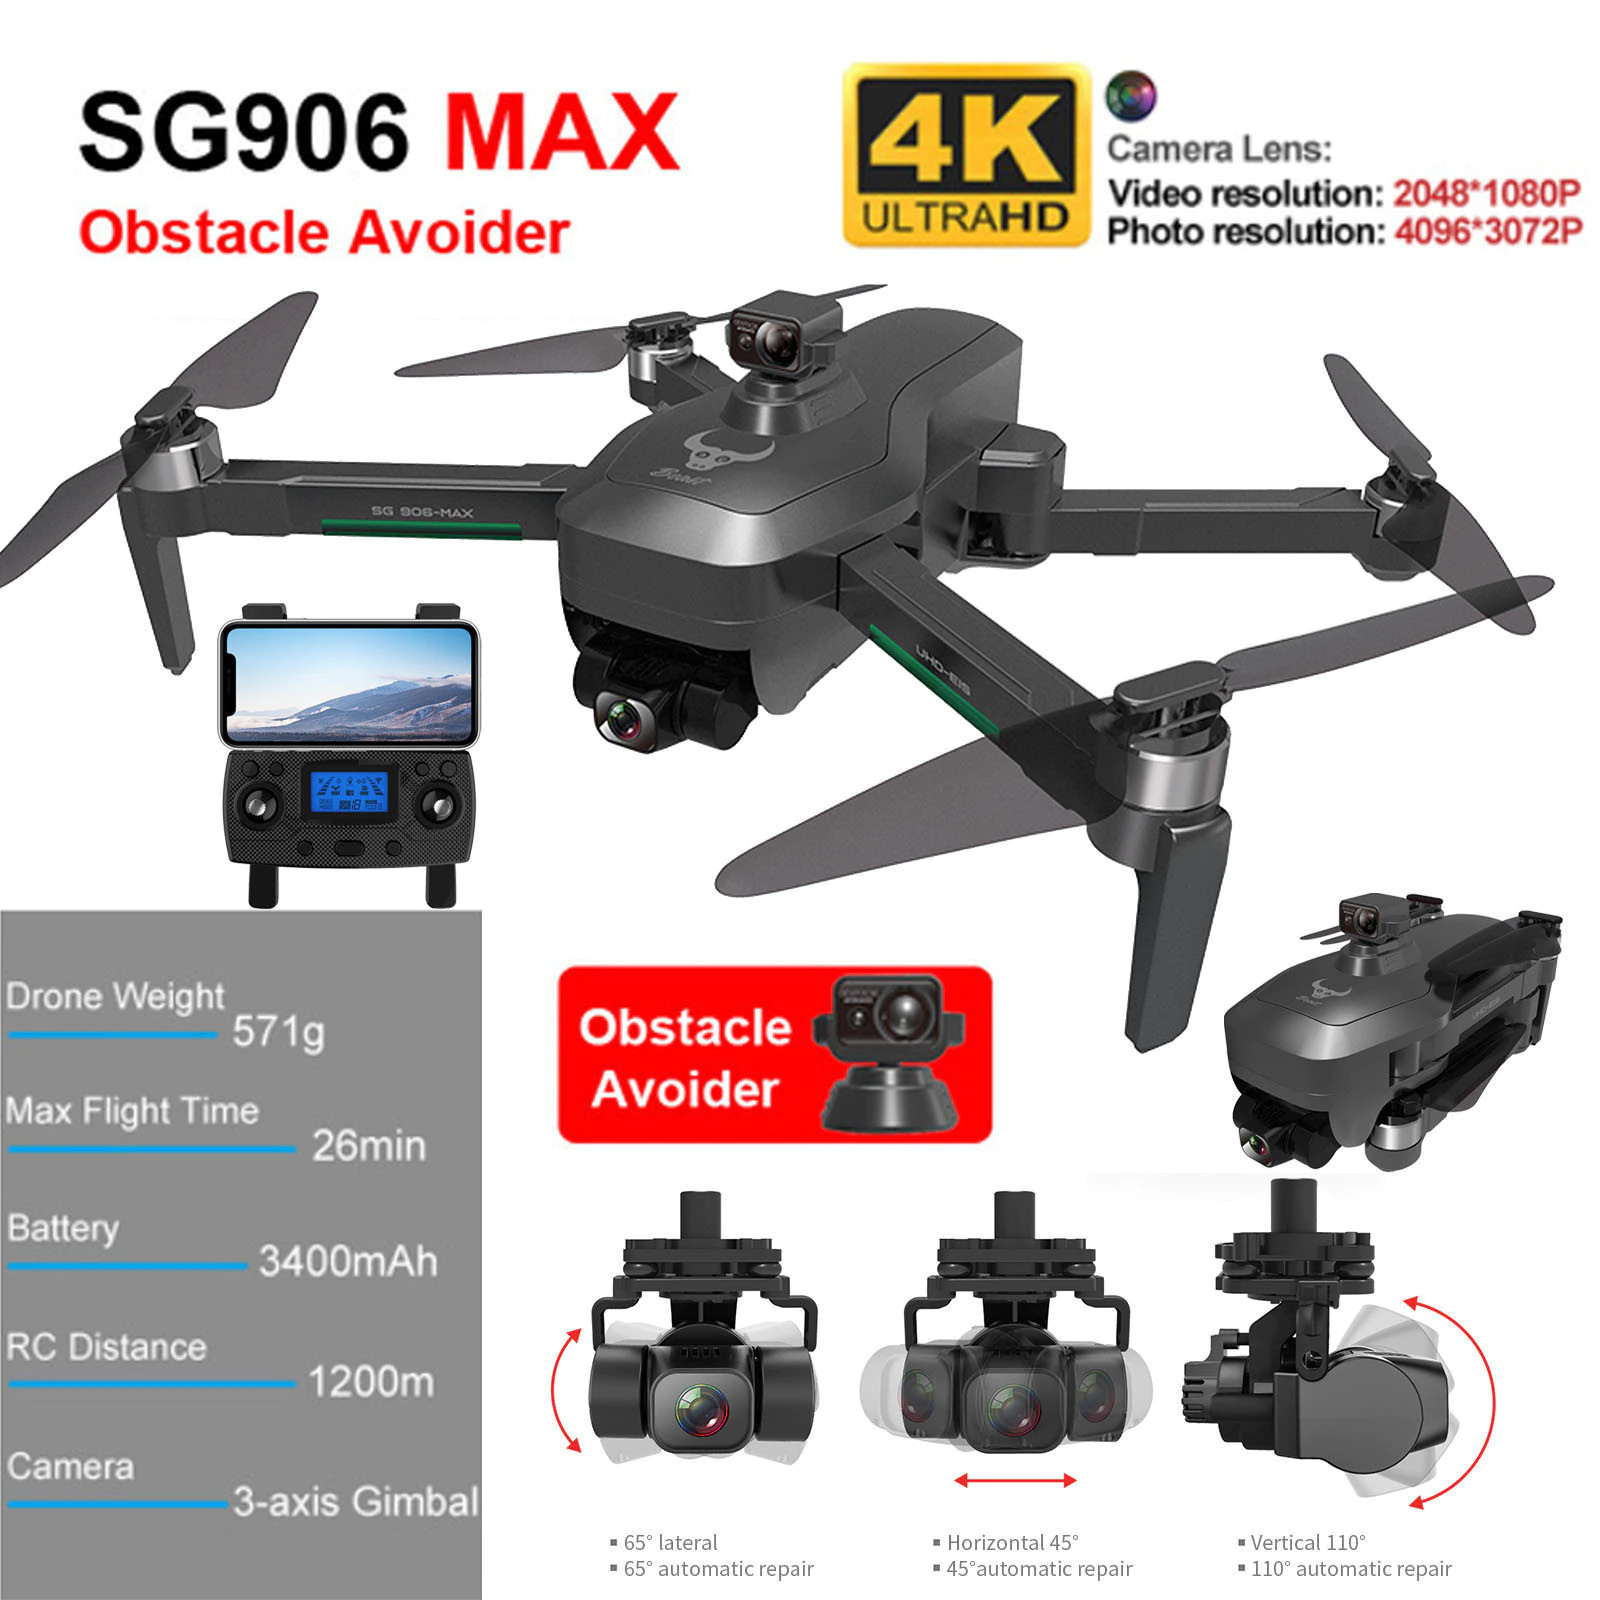 ทั้งหมดแบตเตอรี่ 3 ก้อน【SG906 MAX Combo】GPS เครื่องบิน ล่าสุด พร้อมWifi FPV 5G 4Kกล้อง3-Axis Gimbal Brushless Professional Quadcopter โดรน หลีกเลี่ยงอุปสรรค vs dji